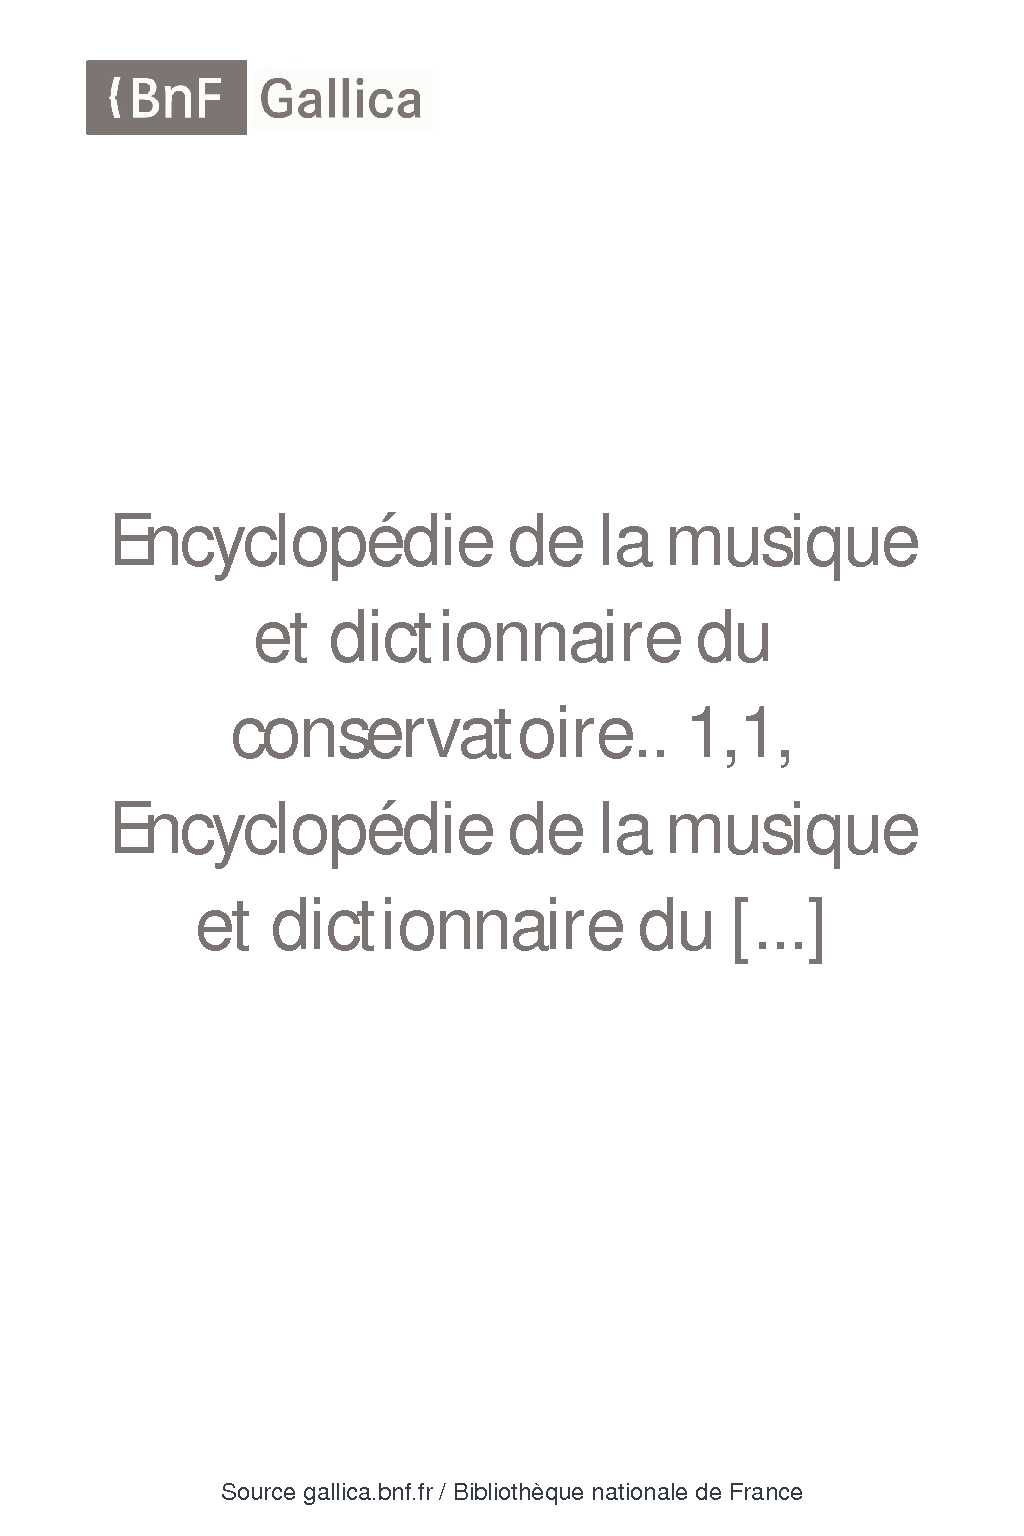 [PDF] Encyclopédie de la musique et dictionnaire du conservatoire 11